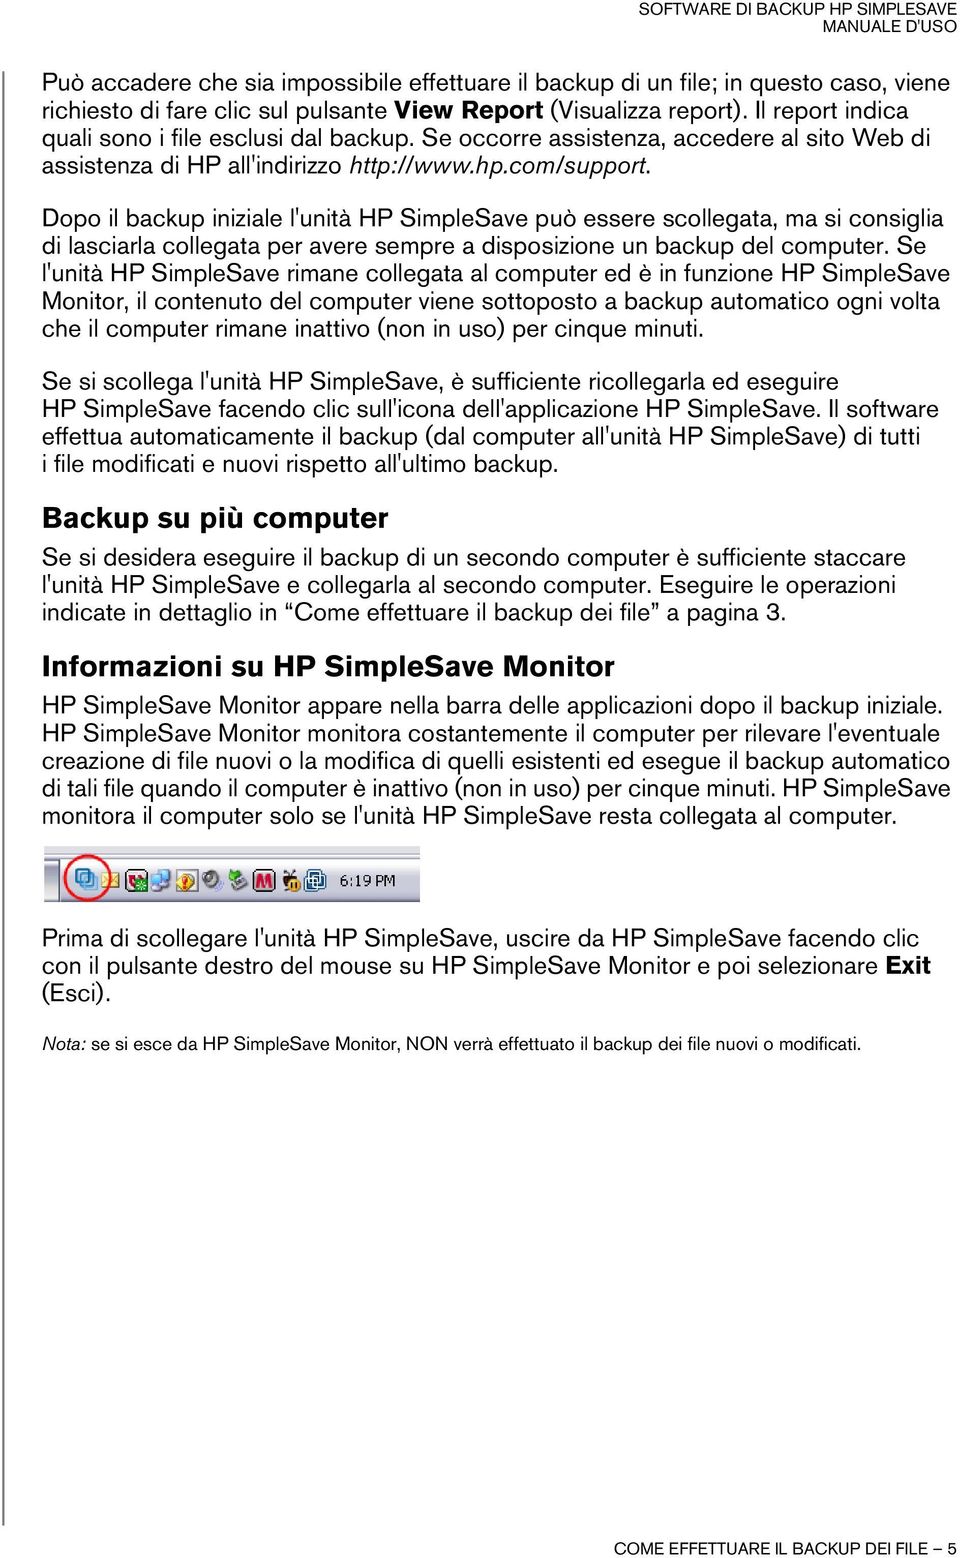 Dopo il backup iniziale l'unità HP SimpleSave può essere scollegata, ma si consiglia di lasciarla collegata per avere sempre a disposizione un backup del computer.